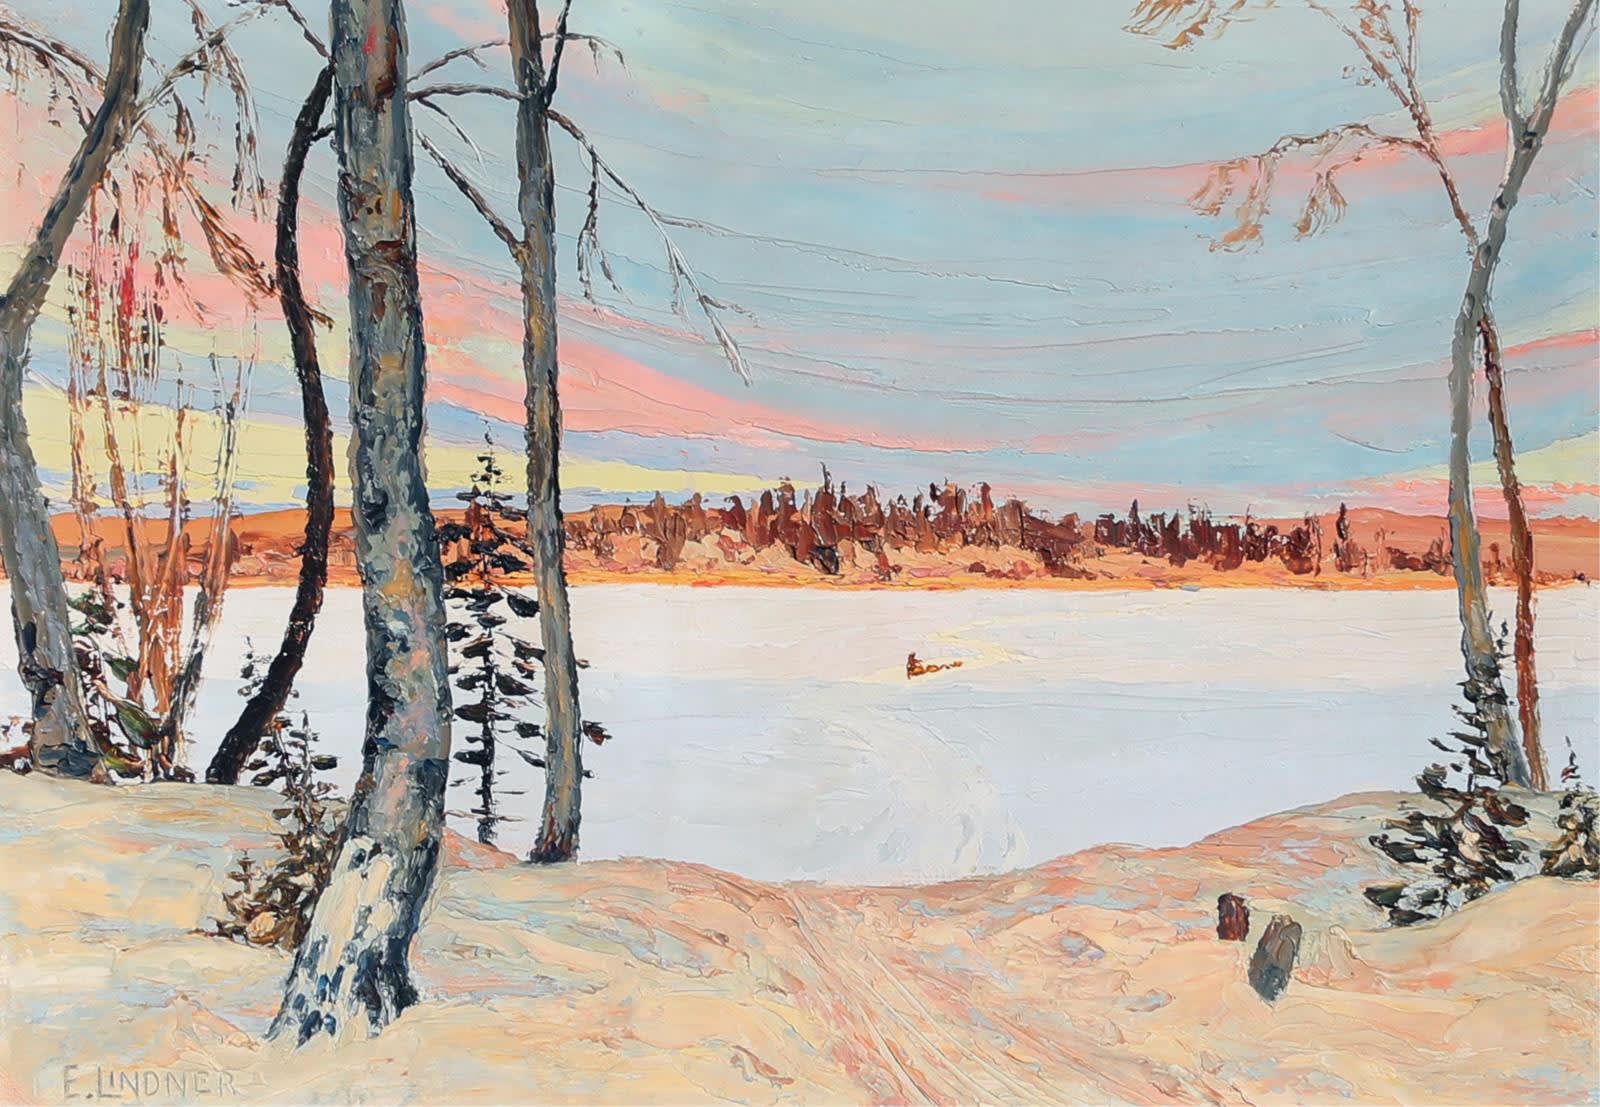 Ernest Lindner; The Winter Trail